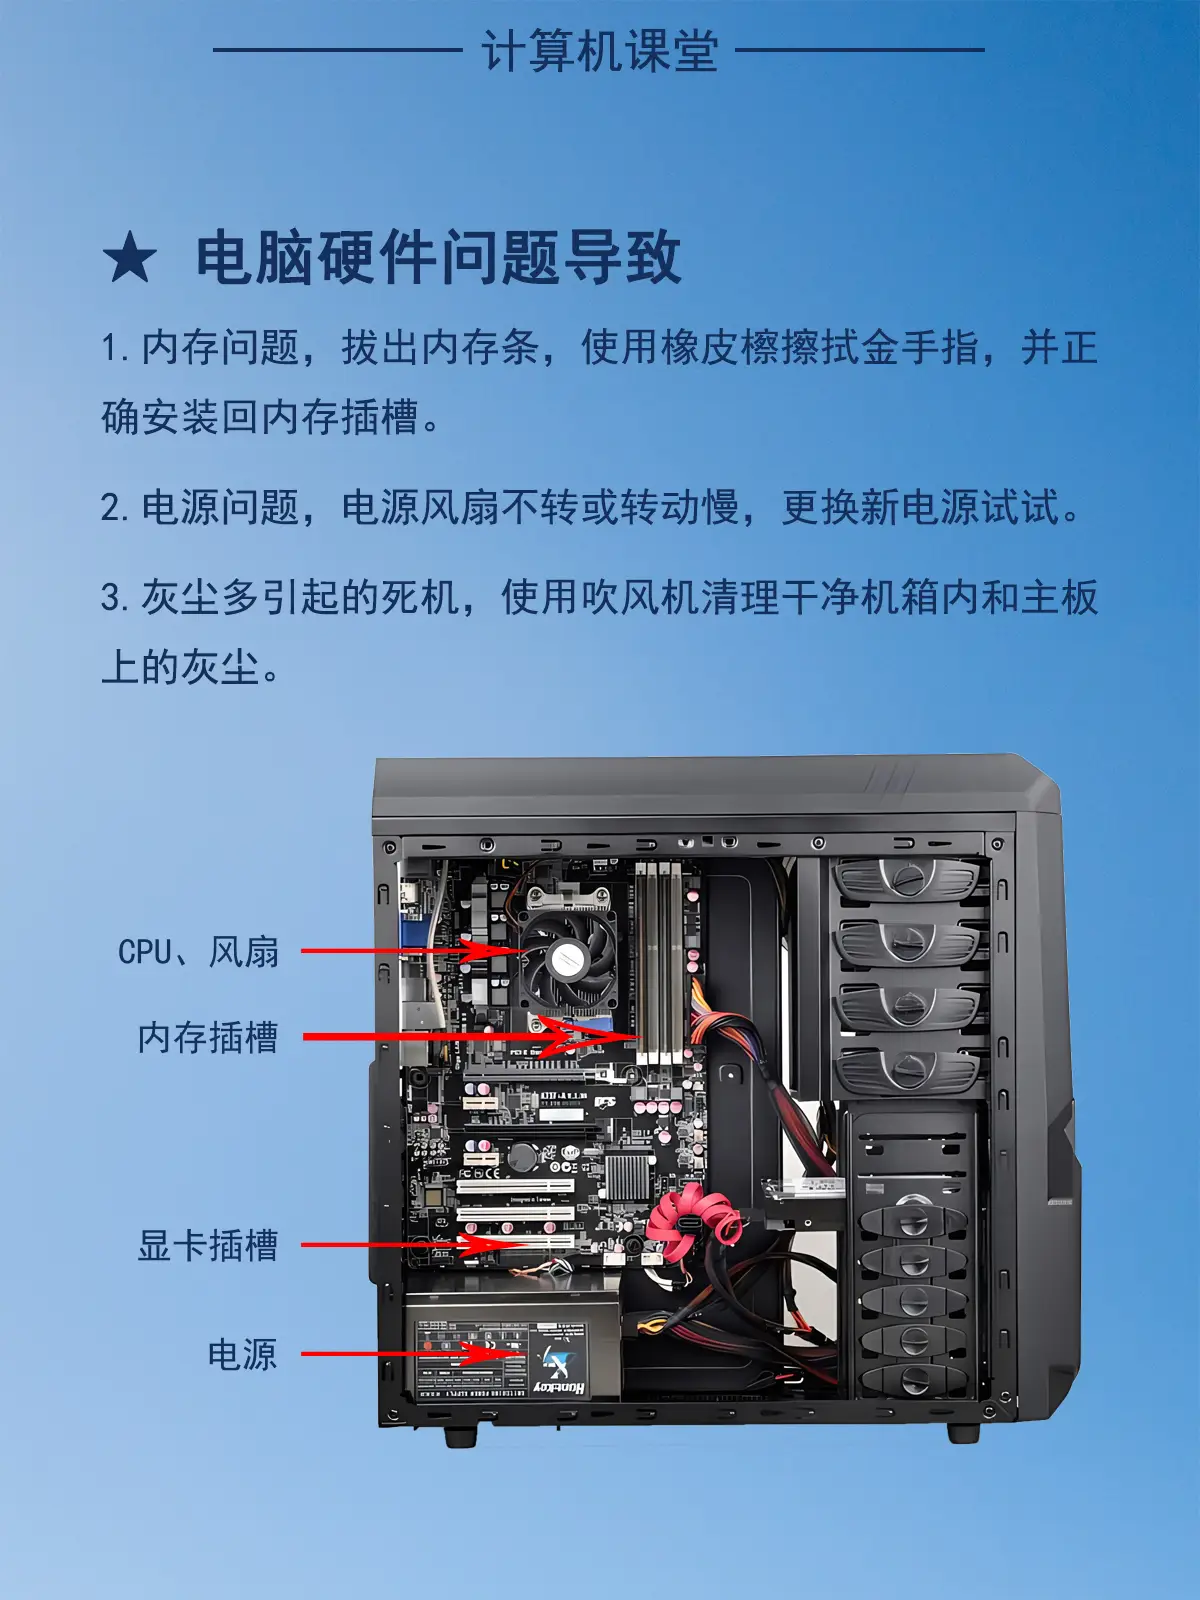 掌握 DDR2 内存条正确安插方法，提升计算机性能  第6张